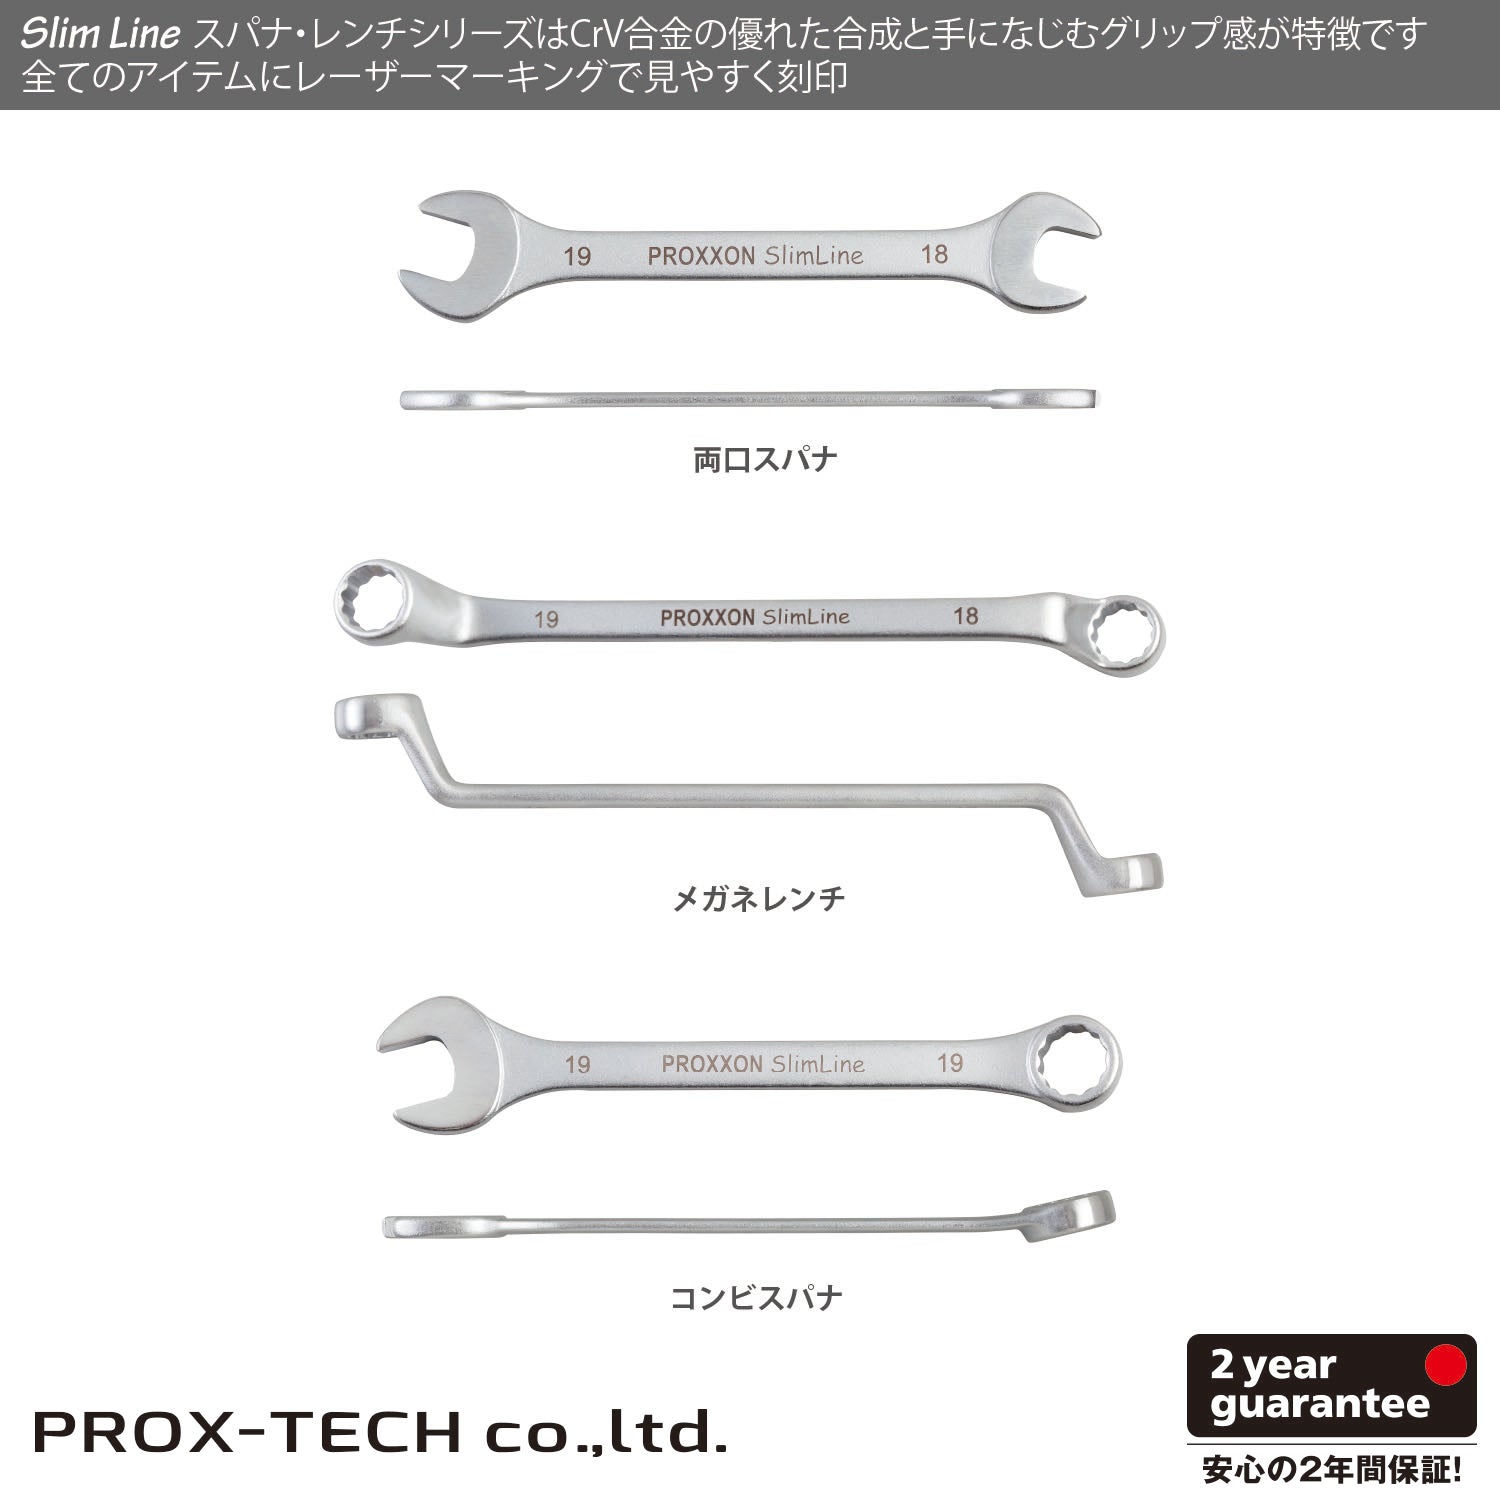 プロクソン Slim-Line 両口スパナ – PROX-TECH Co., Ltd.